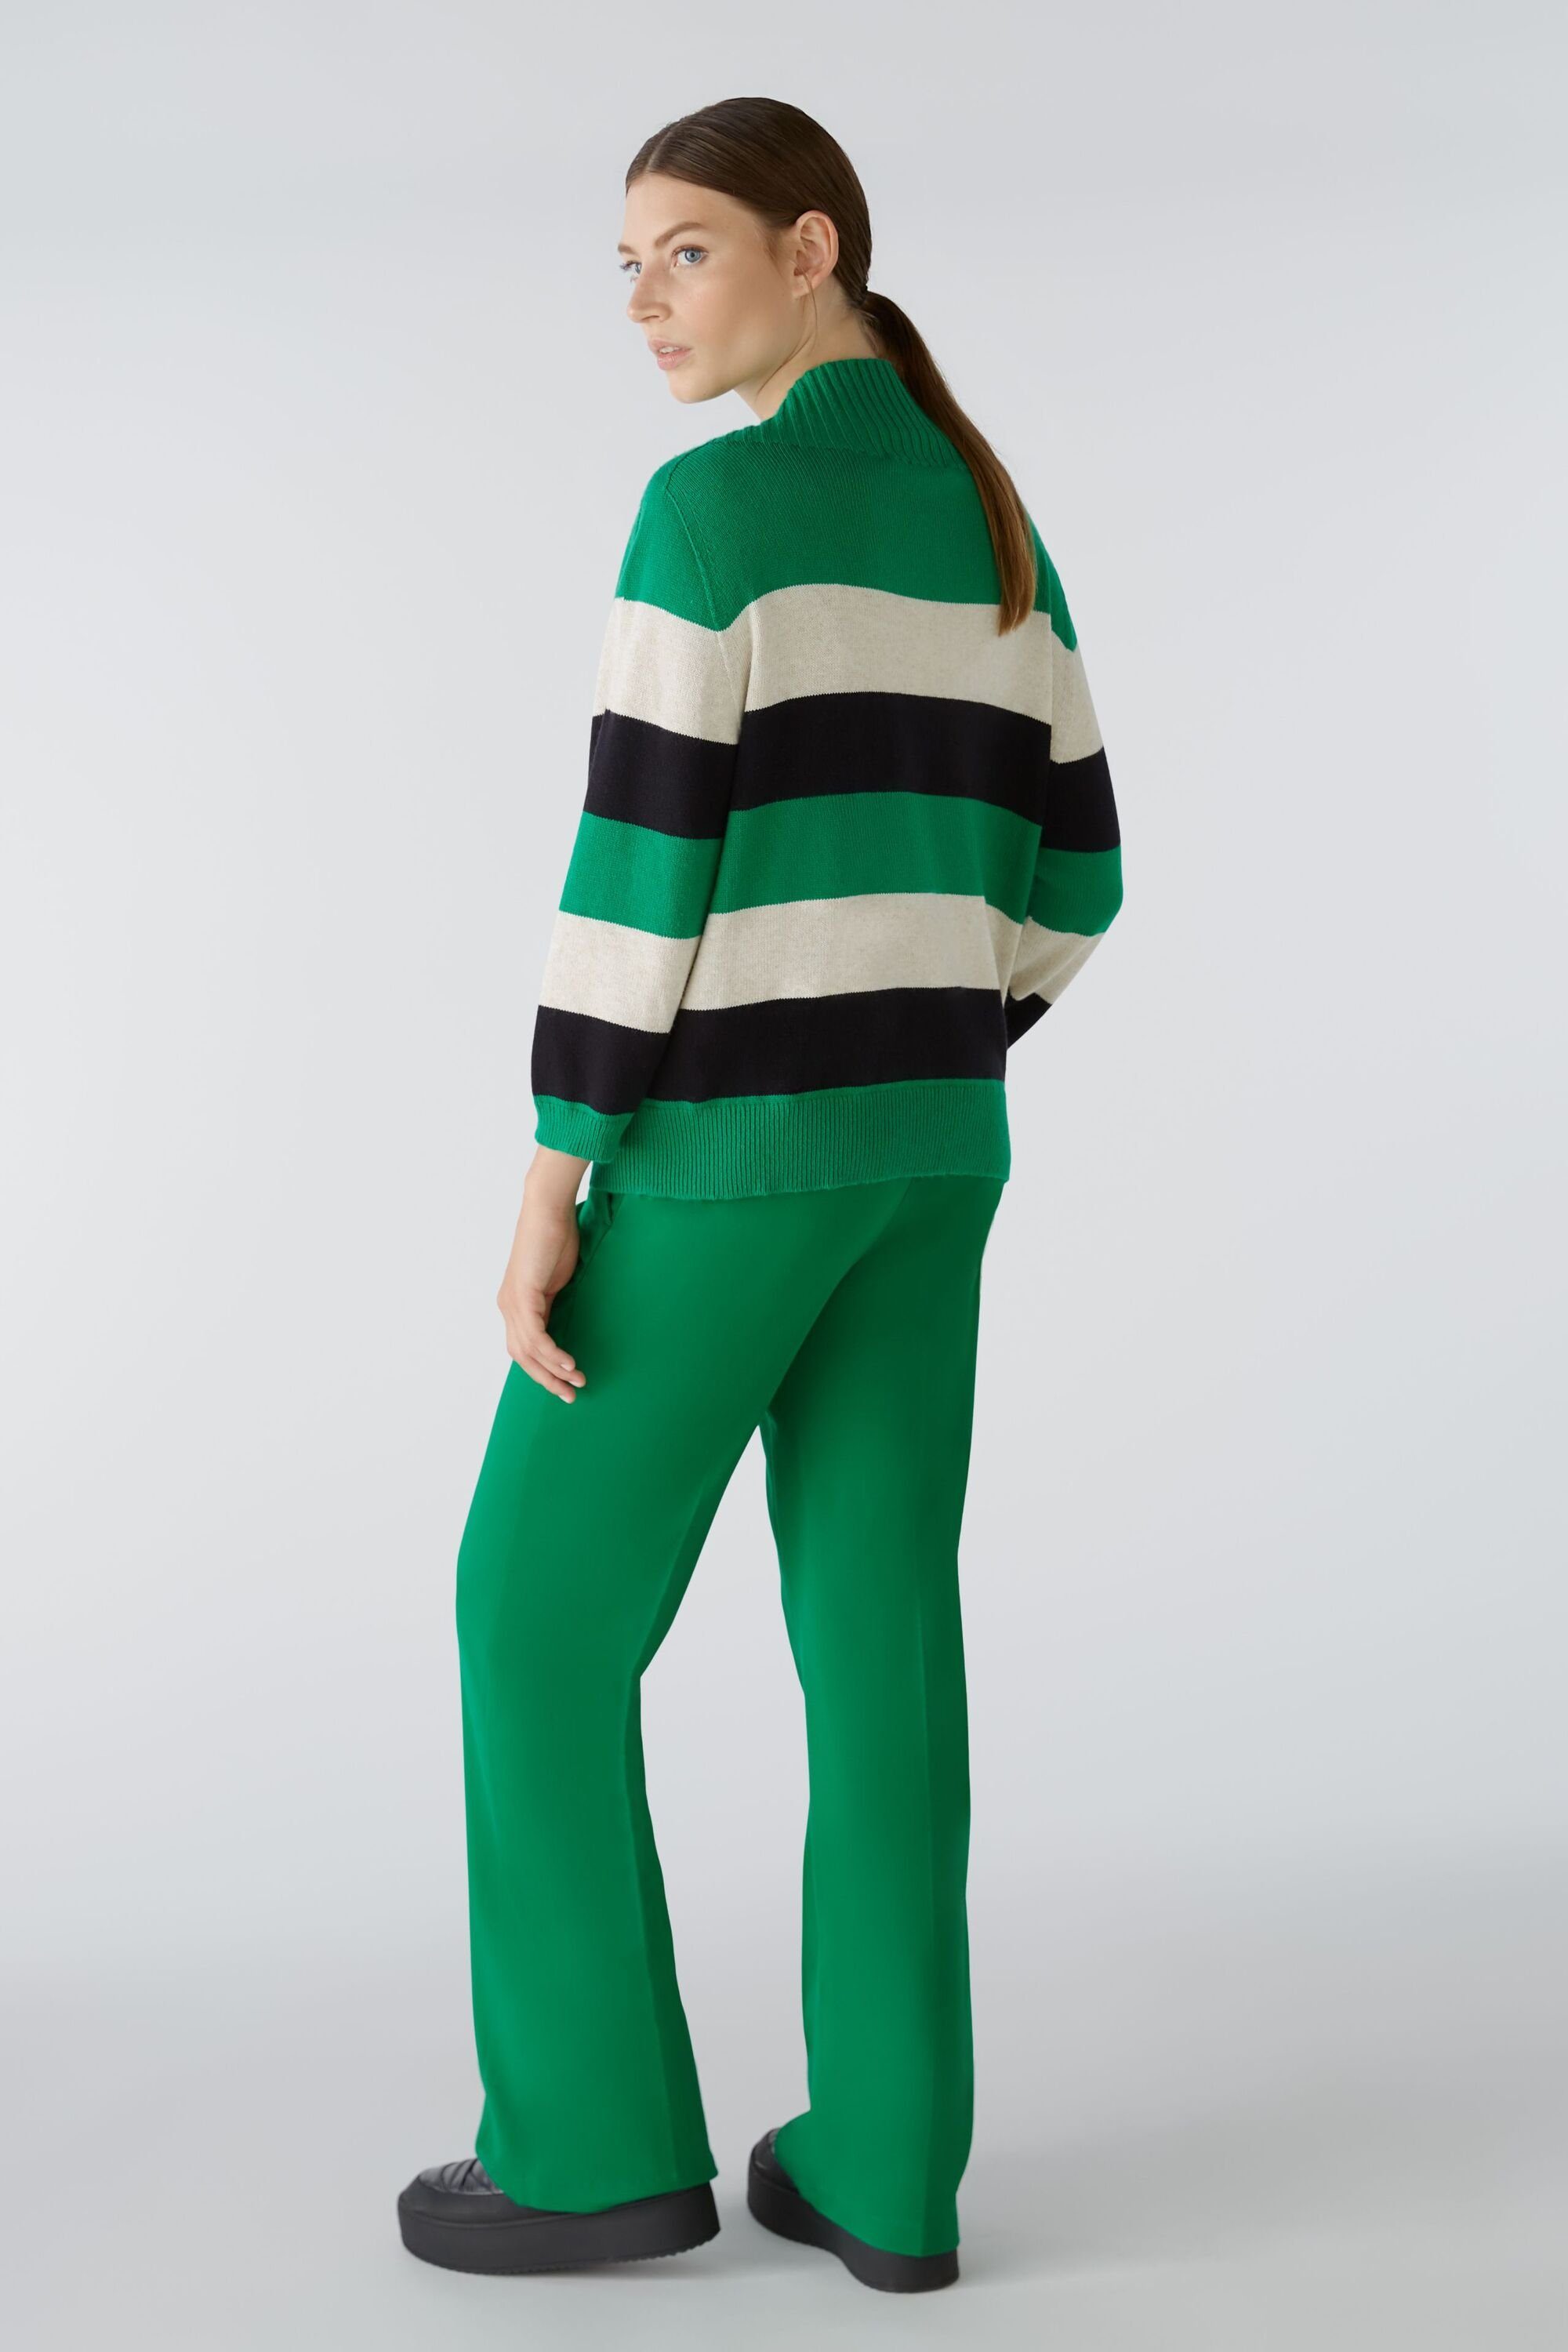 Oui Strickpullover Pullover mit green und grey Viskoseanteil Baumwoll